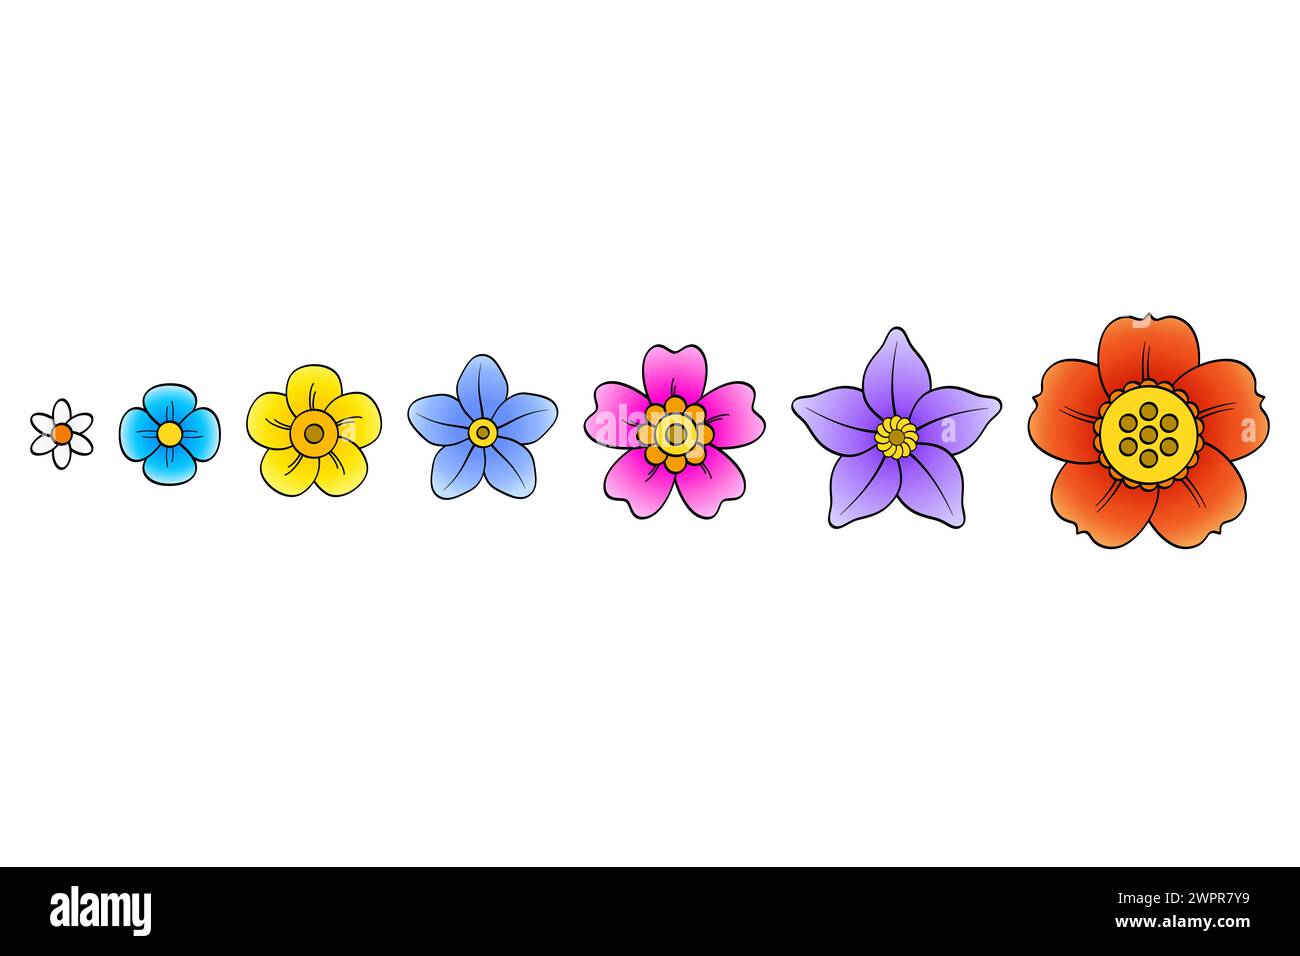 Groupe de fleurs fantastiques colorées dans une rangée. Ensemble de sept fleurs de type différent et dans des couleurs vives. Illustration isolée sur fond blanc. Banque D'Images